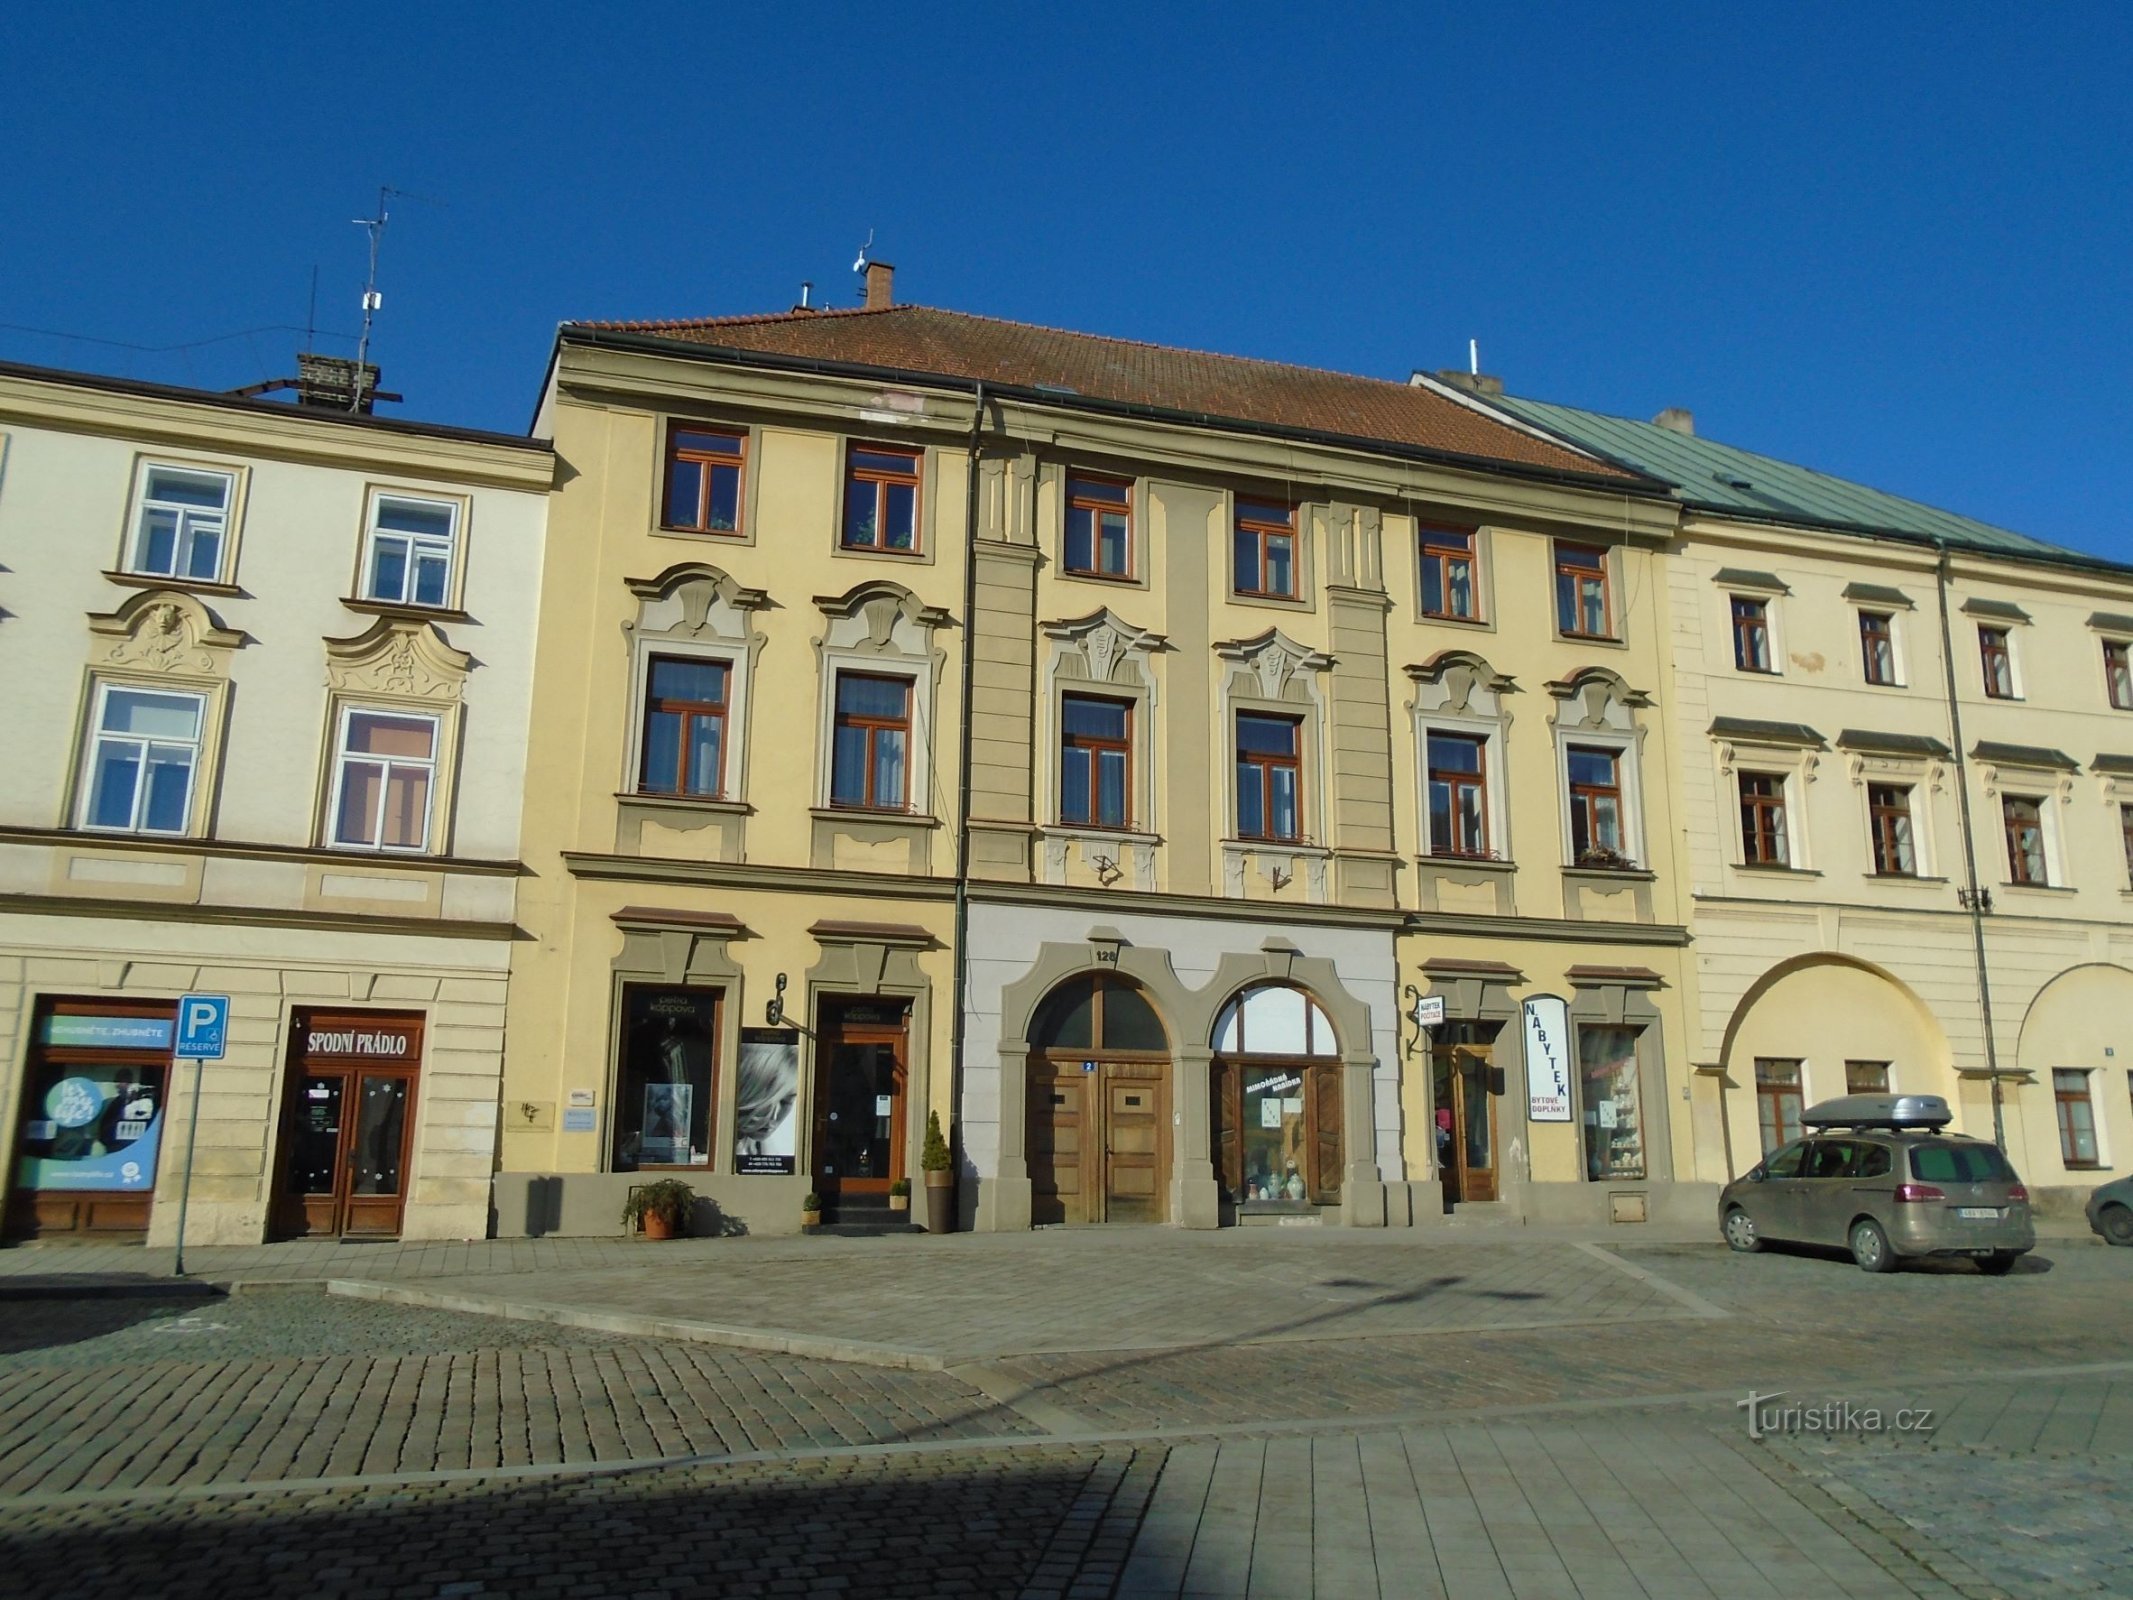 Malé náměstí br. 128 (Hradec Králové, 25.2.2018. travnja XNUMX.)